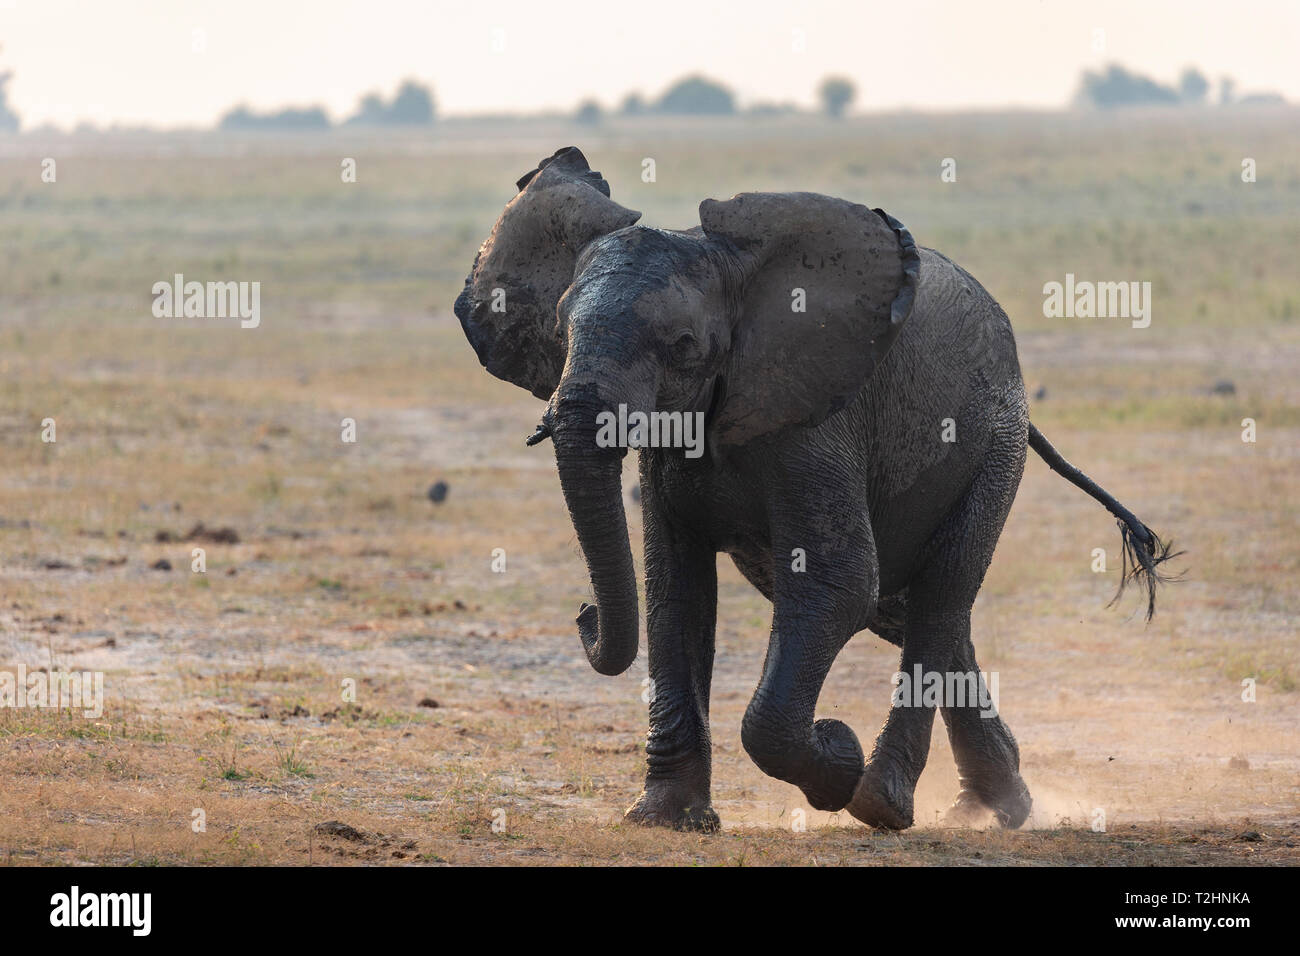 El elefante africano, Loxodonta africana, correr del río Chobe, Botswana, África austral Foto de stock